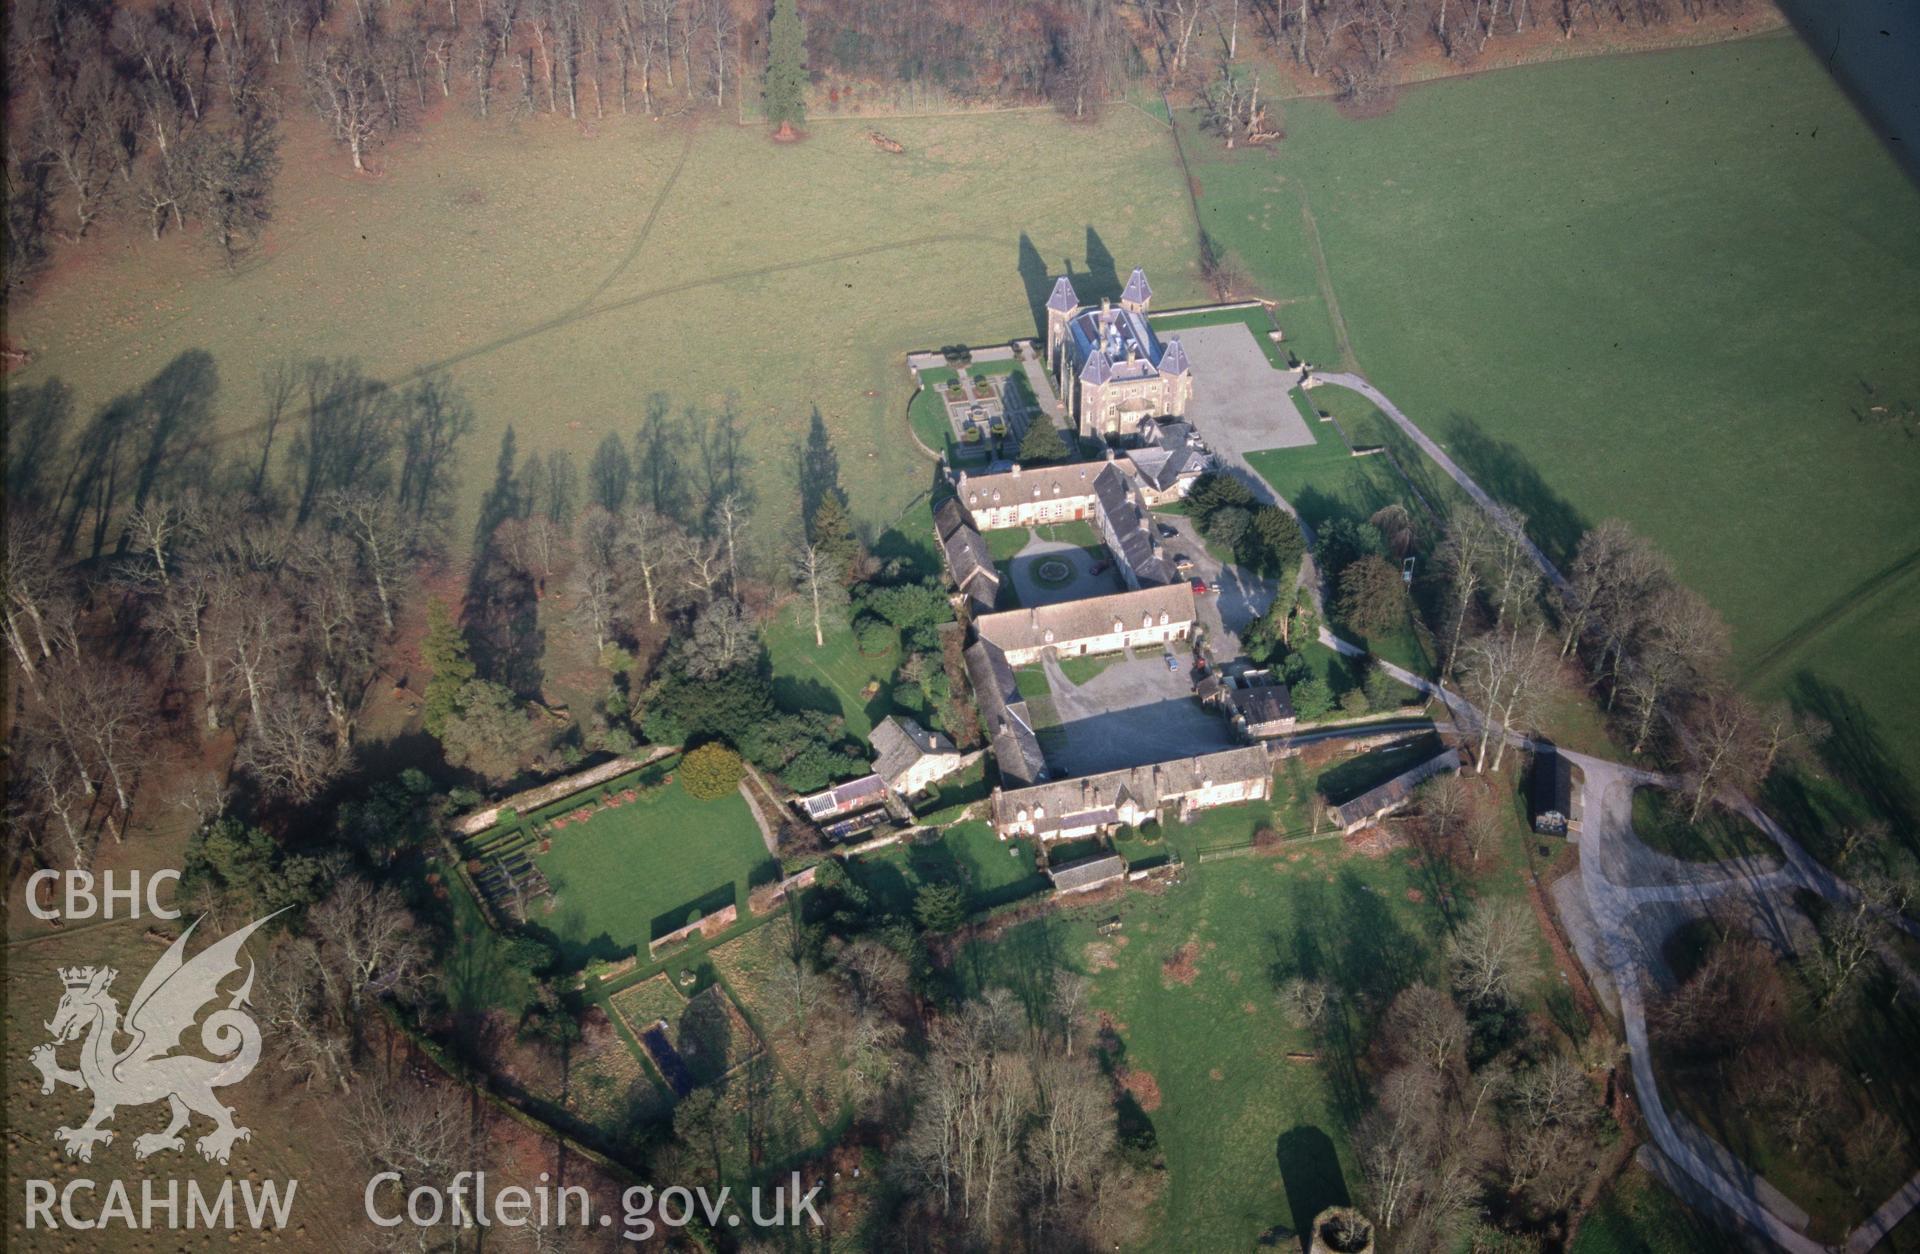 Slide of RCAHMW colour oblique aerial photograph of Newton House;dynevor Castle, Plas Dinefwr, taken by T.G. Driver, 28/1/1998.